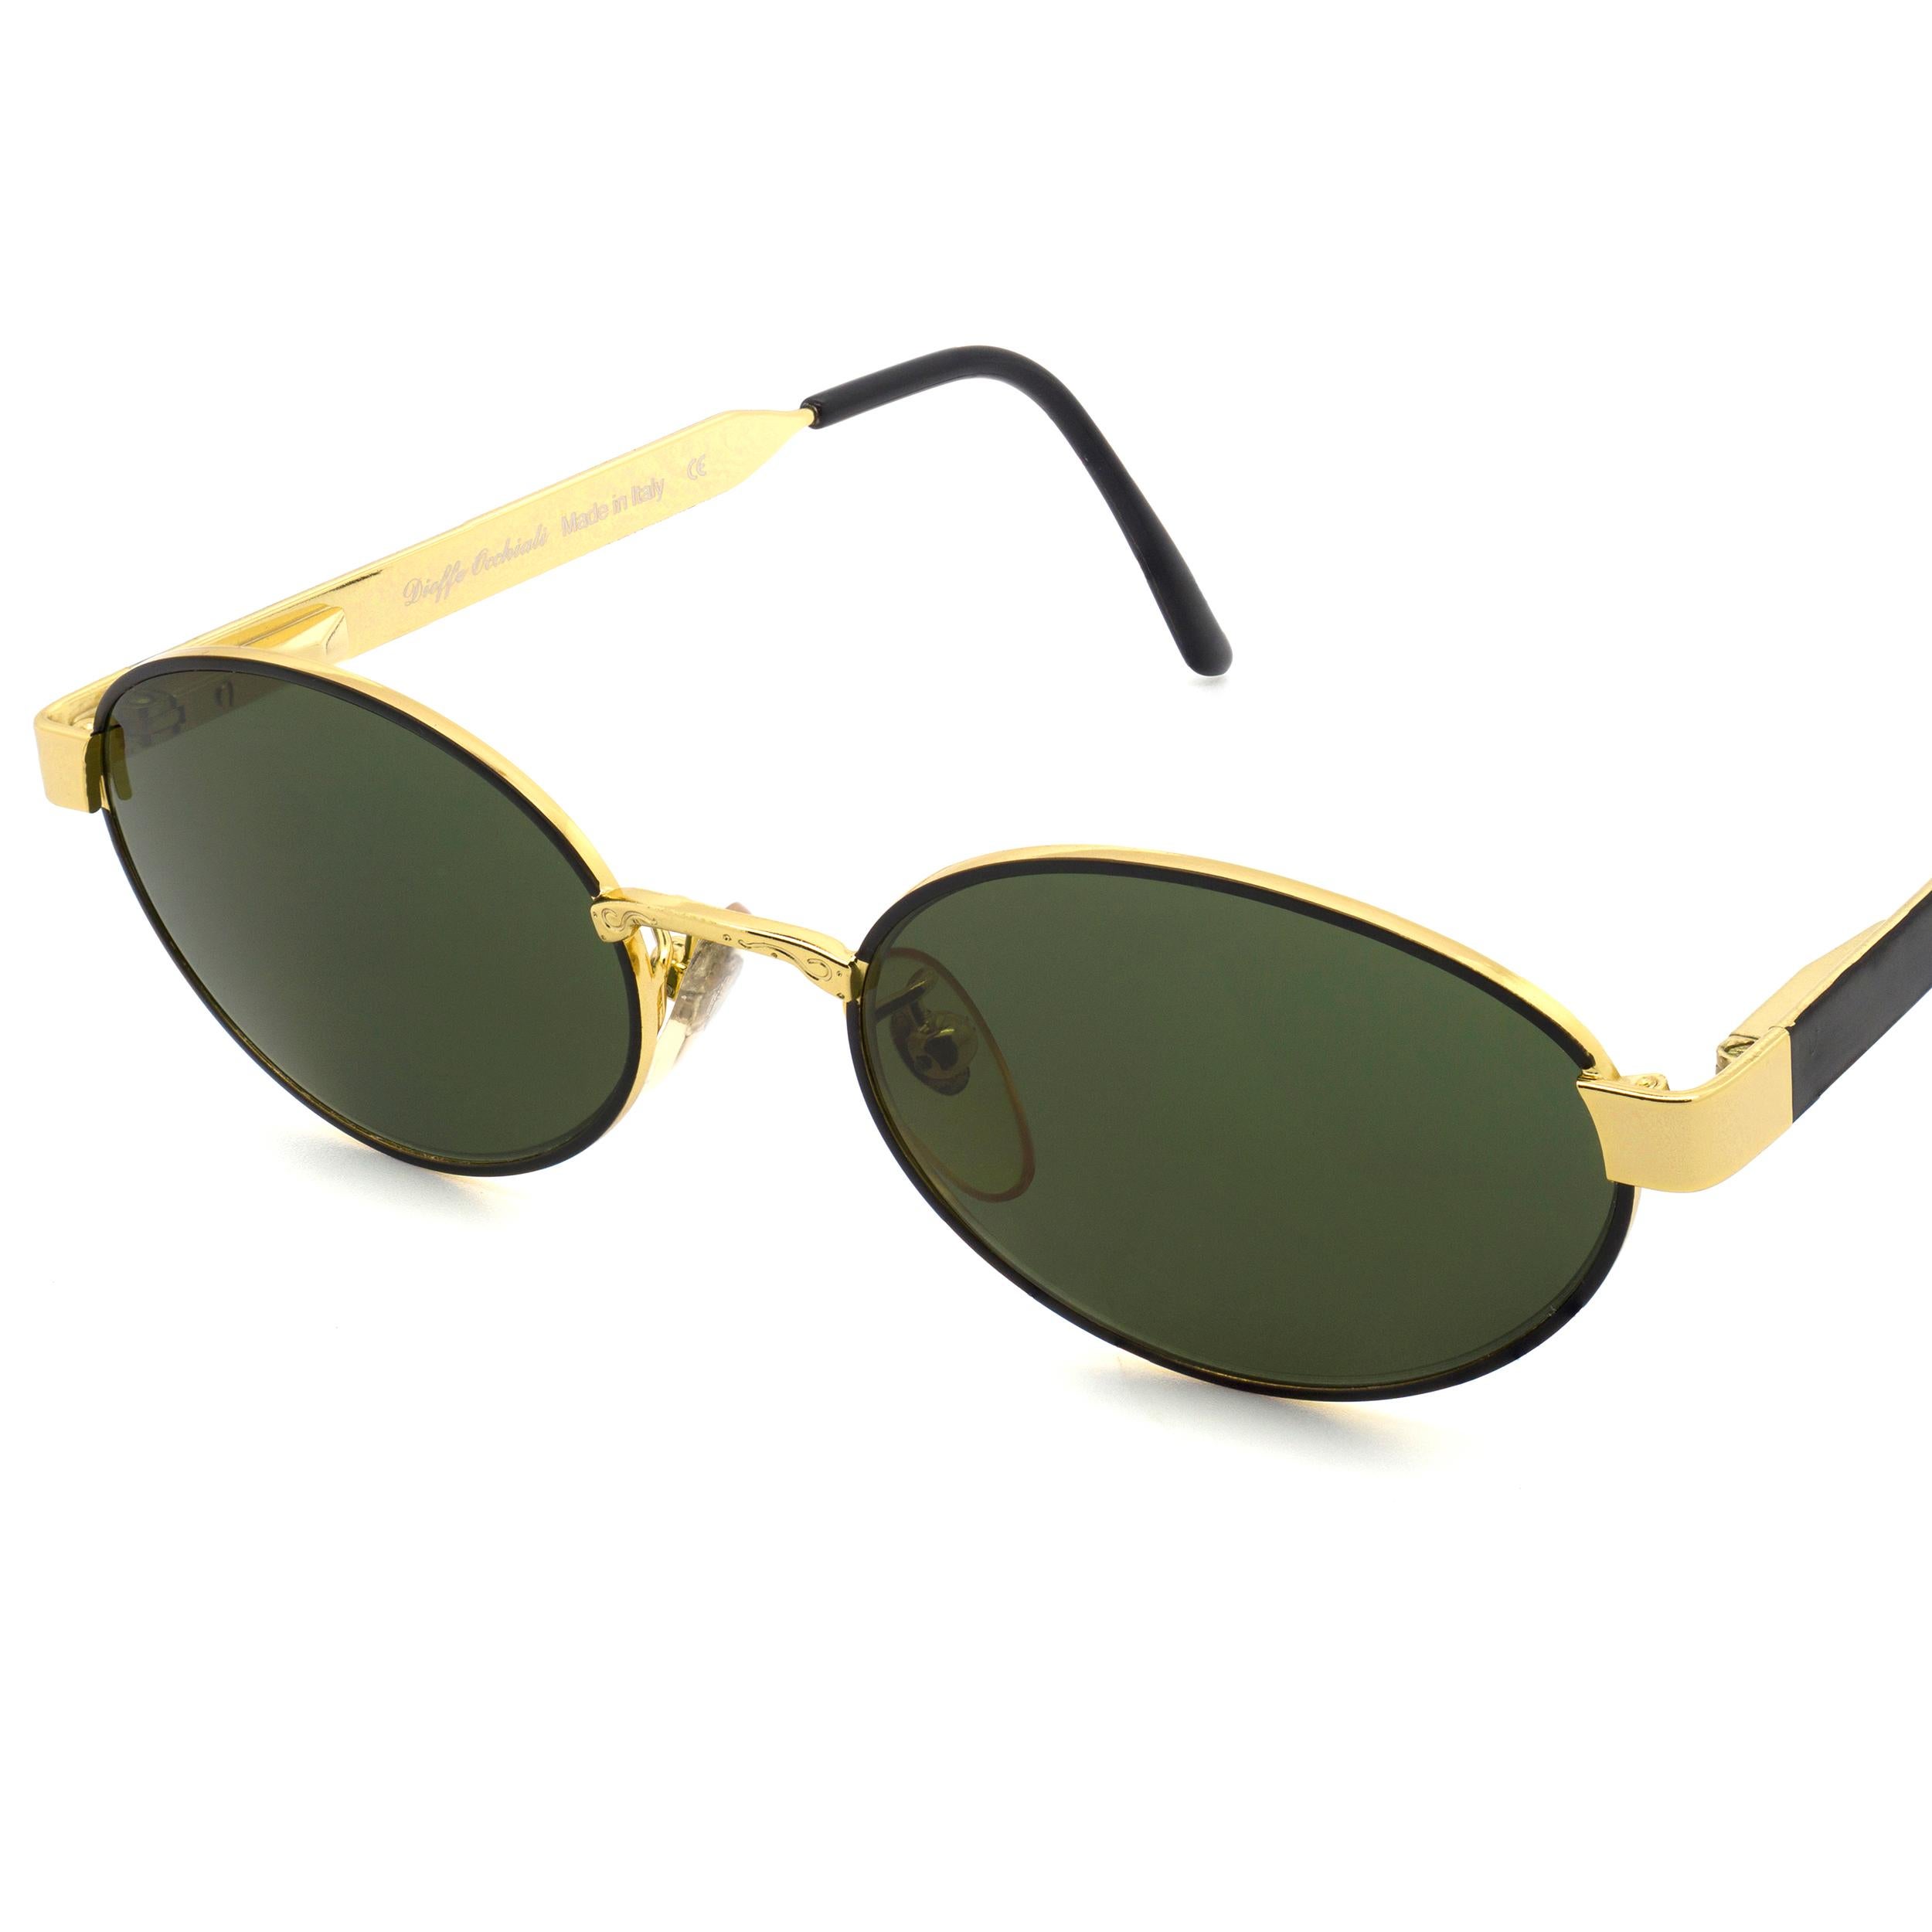 Black Tullio Abbate oval vintage sunglasses art deco For Sale